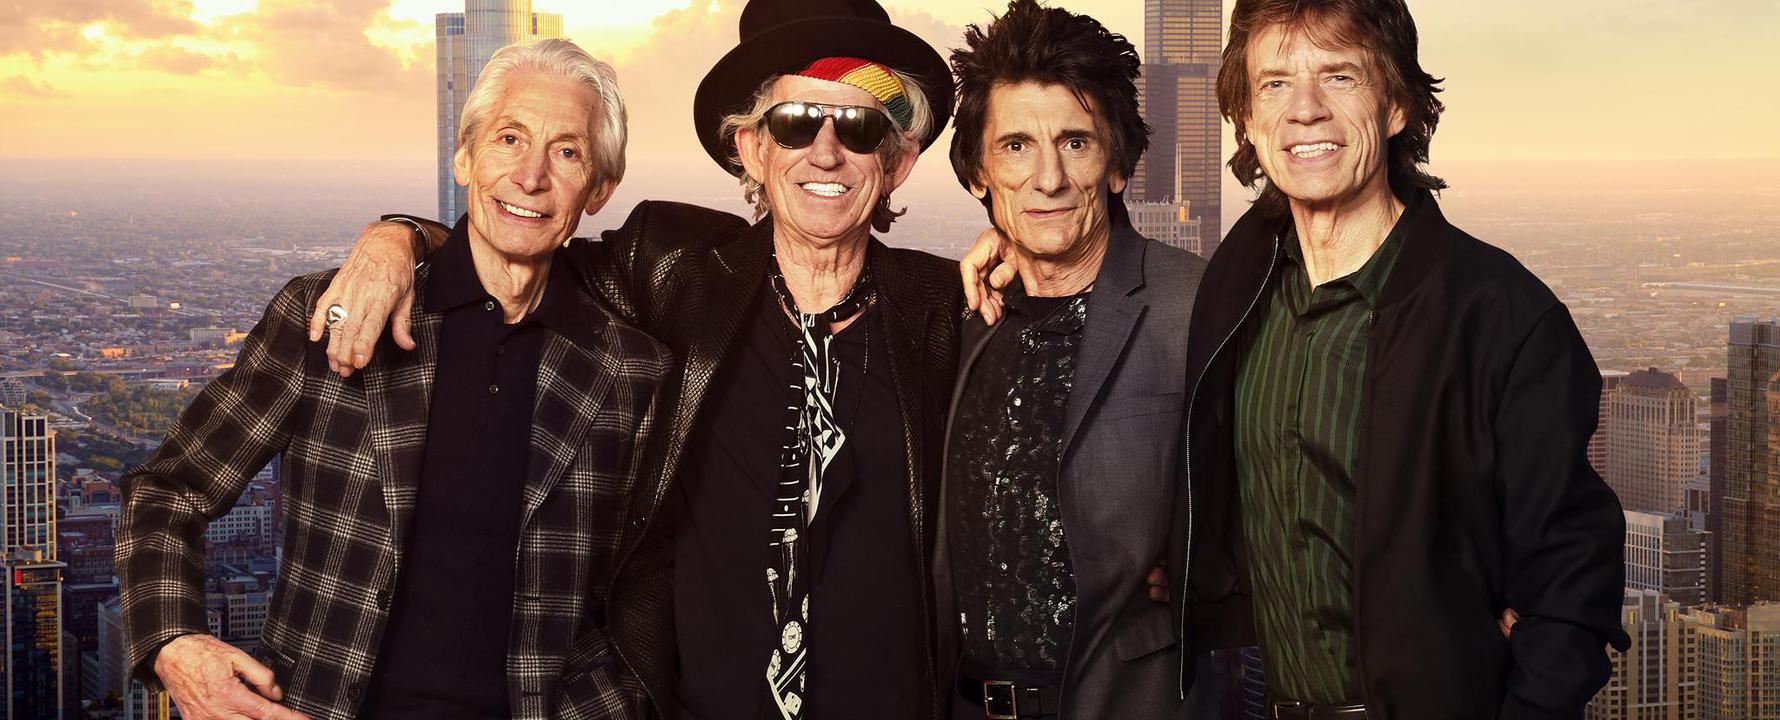 Fotografia promozionale di The Rolling Stones.